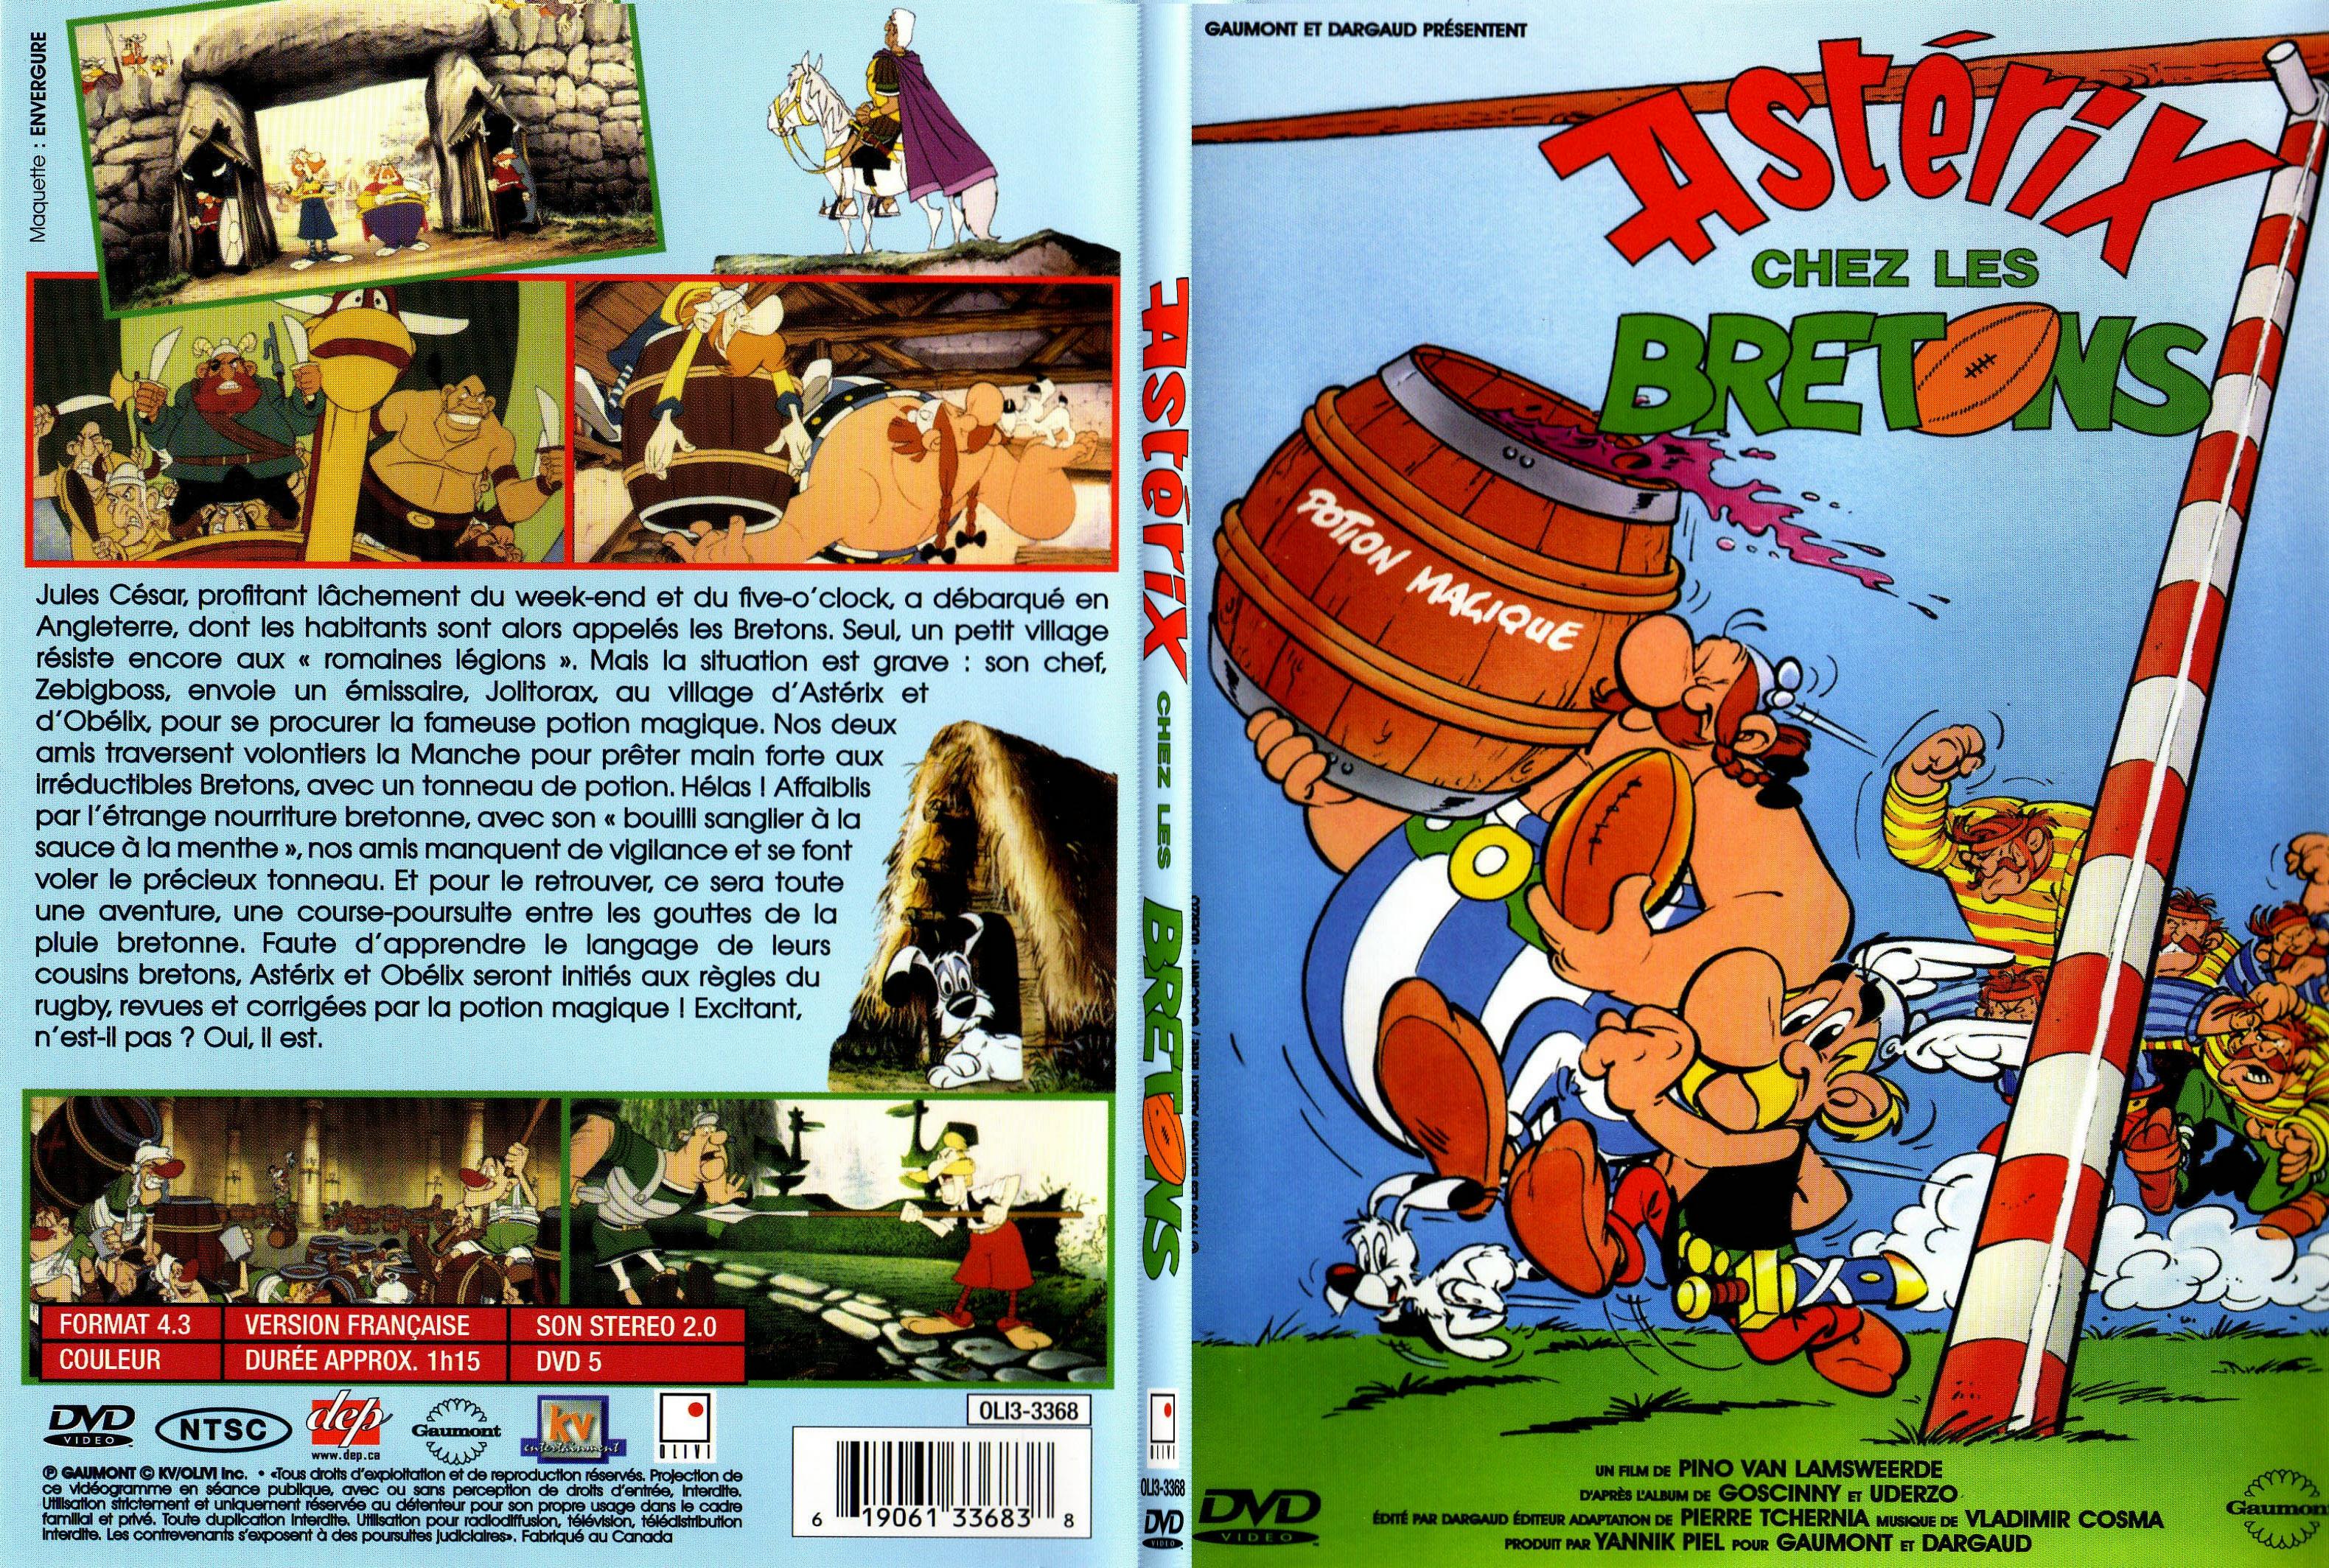 Jaquette DVD Asterix chez les bretons - SLIM